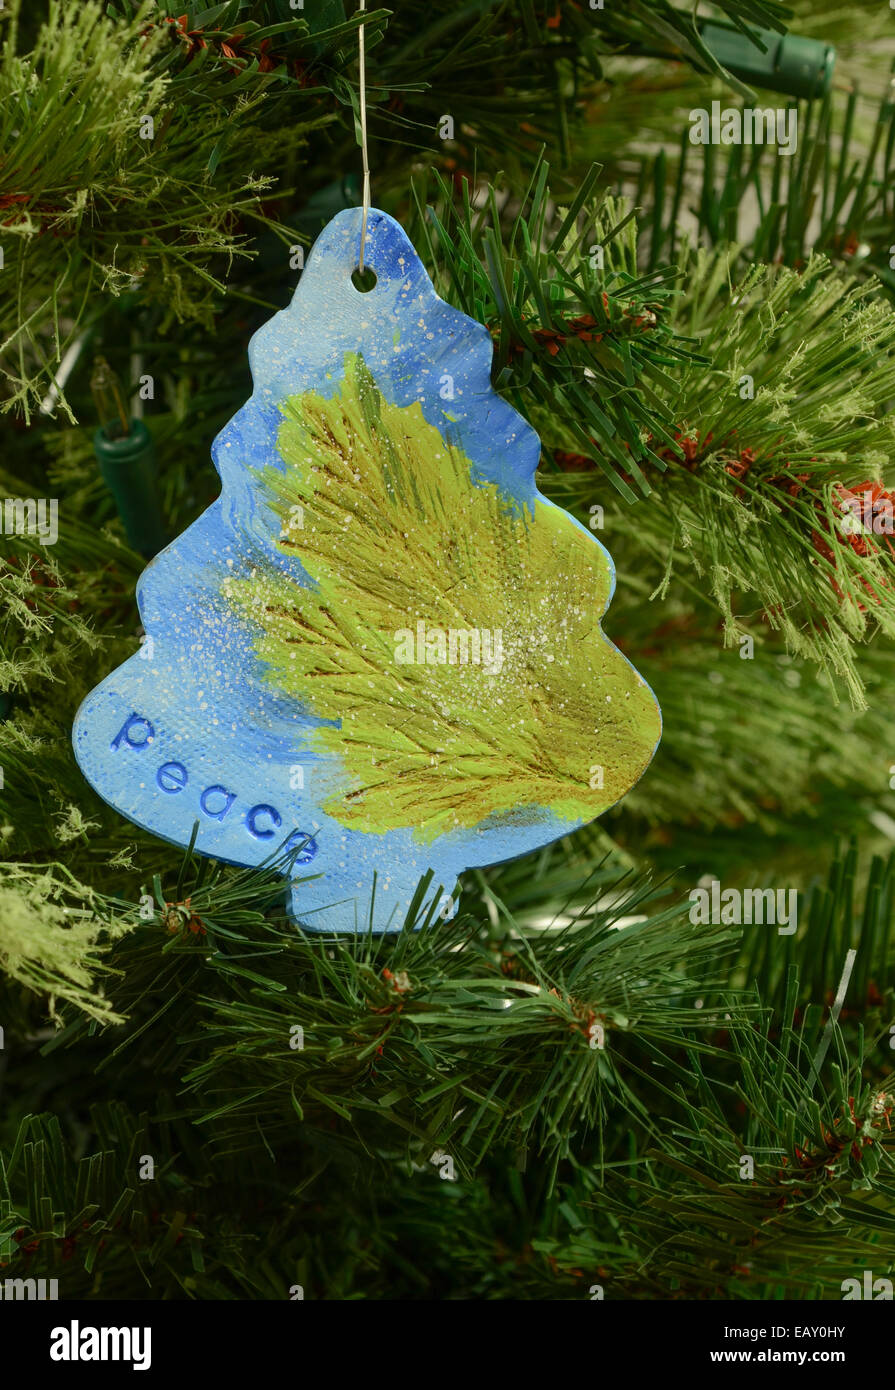 Eine handgefertigte Keramik Ornament in Form eines Weihnachtsbaumes mit einem grünen Ast, blauen Himmel und das Wort Frieden gemalt Stockfoto